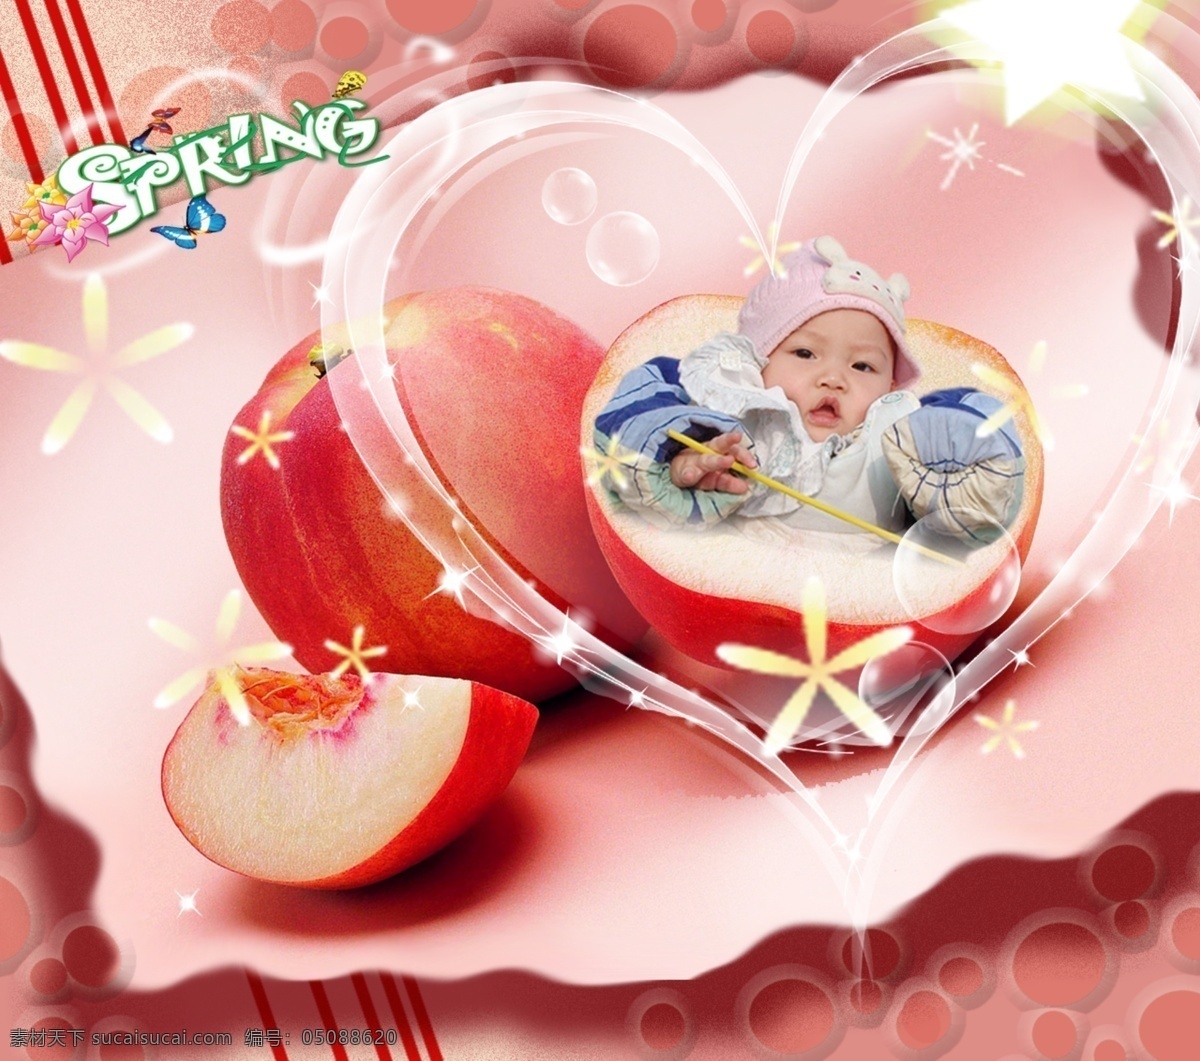 分层 儿童摄影 分层模板 花 苹果 水果 心型 源文件 宝宝 模板下载 水果宝宝 psd源文件 餐饮素材